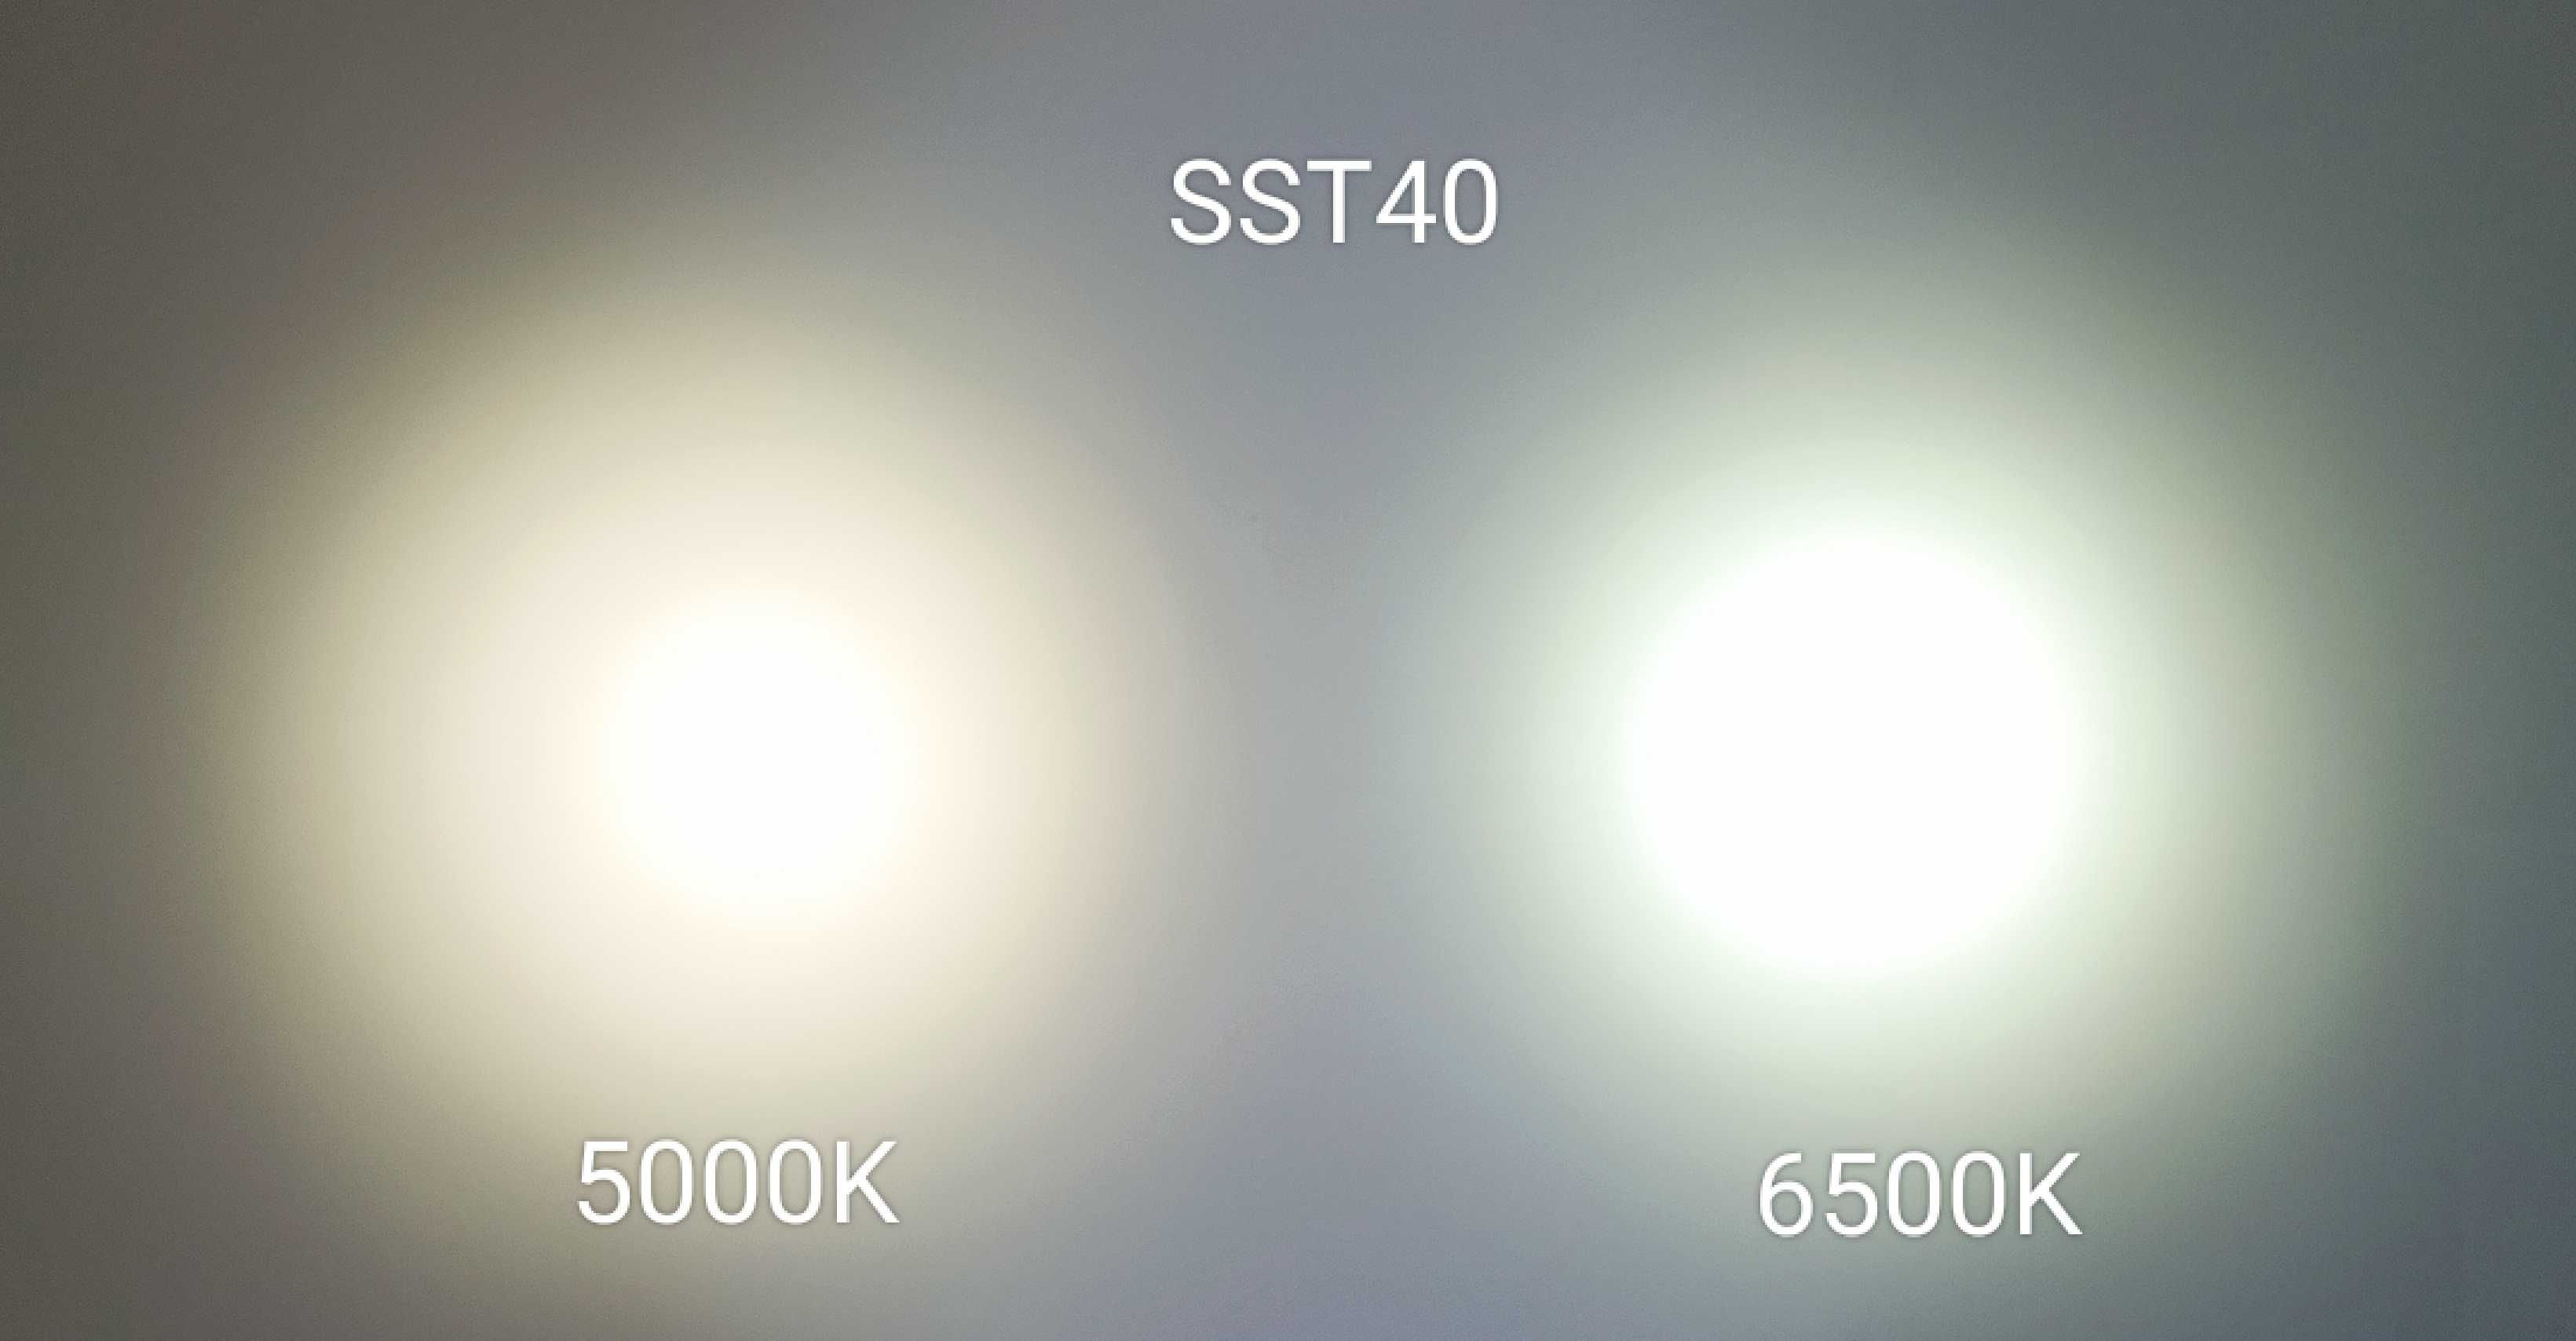 Ліхтарики Convoy S2+ SST20 і SST40, Різне світло, UV, аксесуари. ОПТ